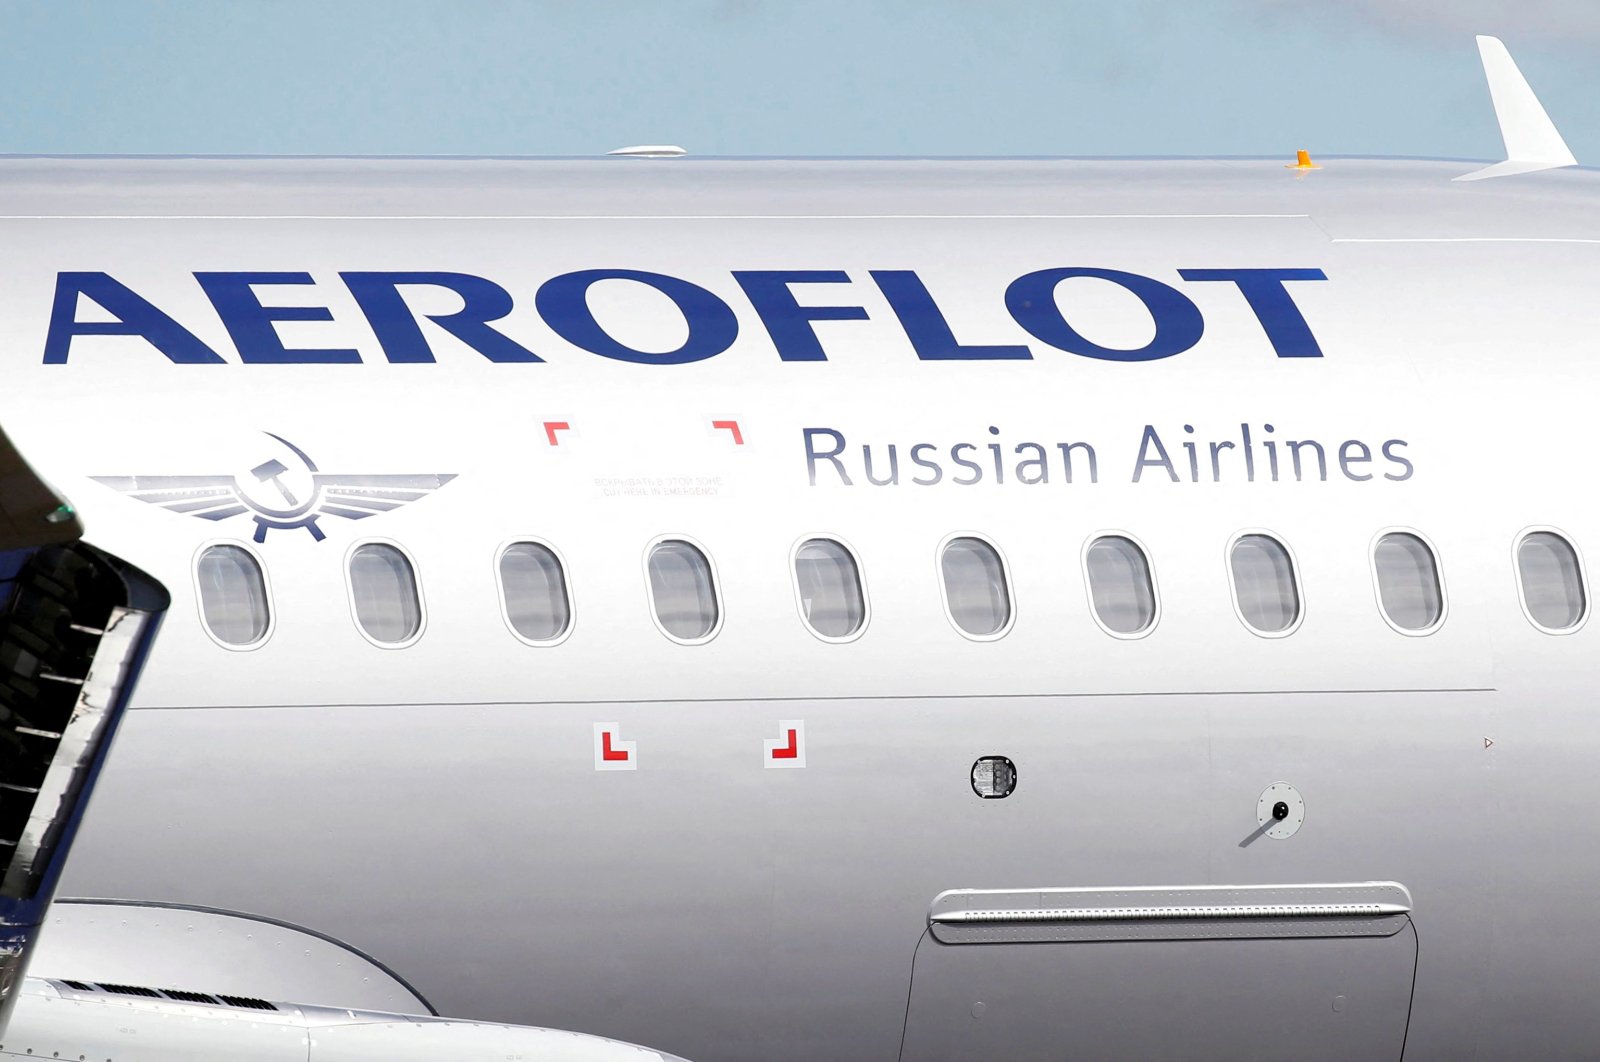 Rusia menanggalkan pesawat jet untuk mengamankan suku cadang sebagai gigitan sanksi